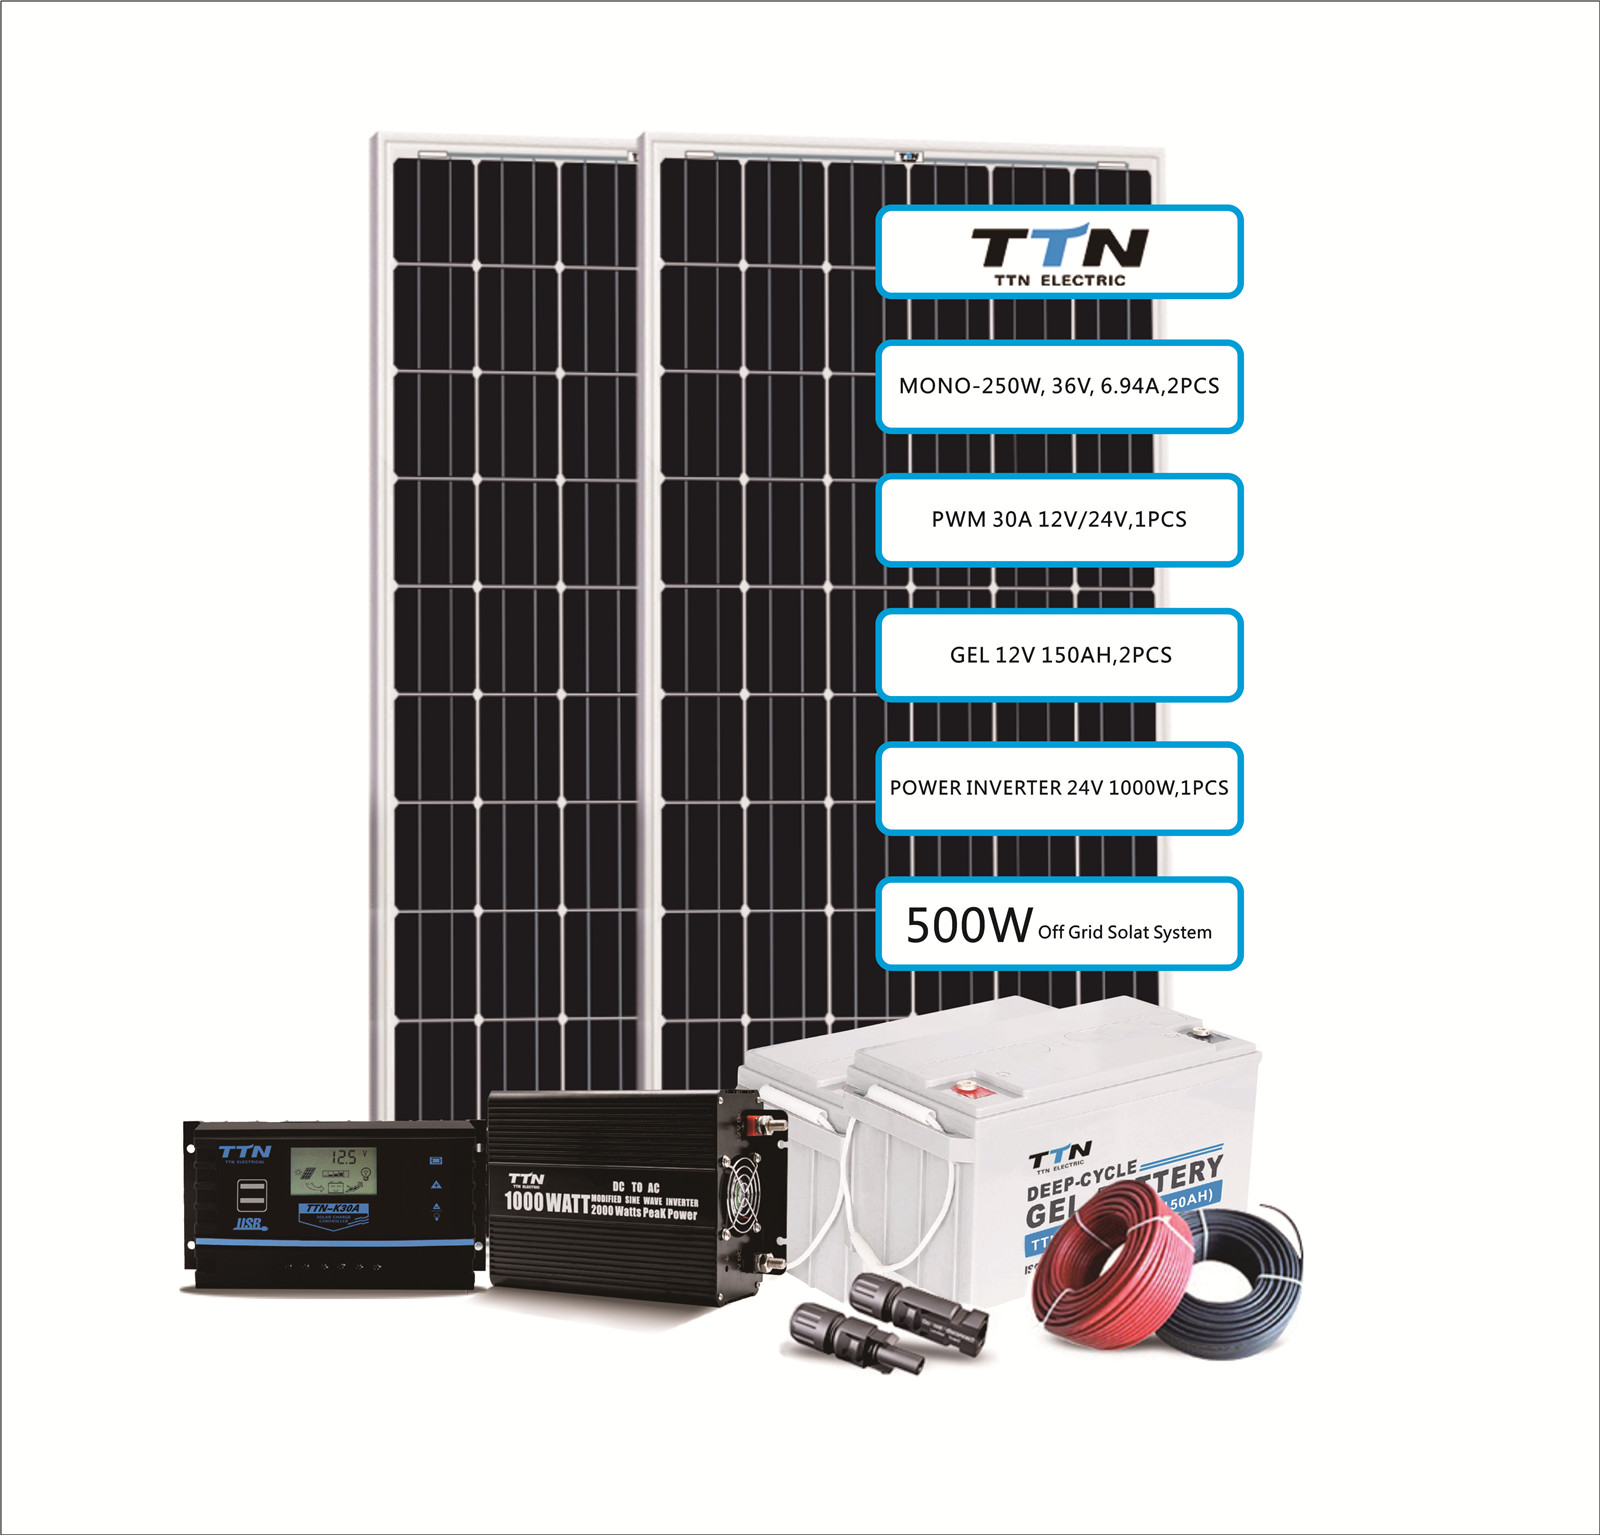 Sistema de energía solar 500W / 2655WH